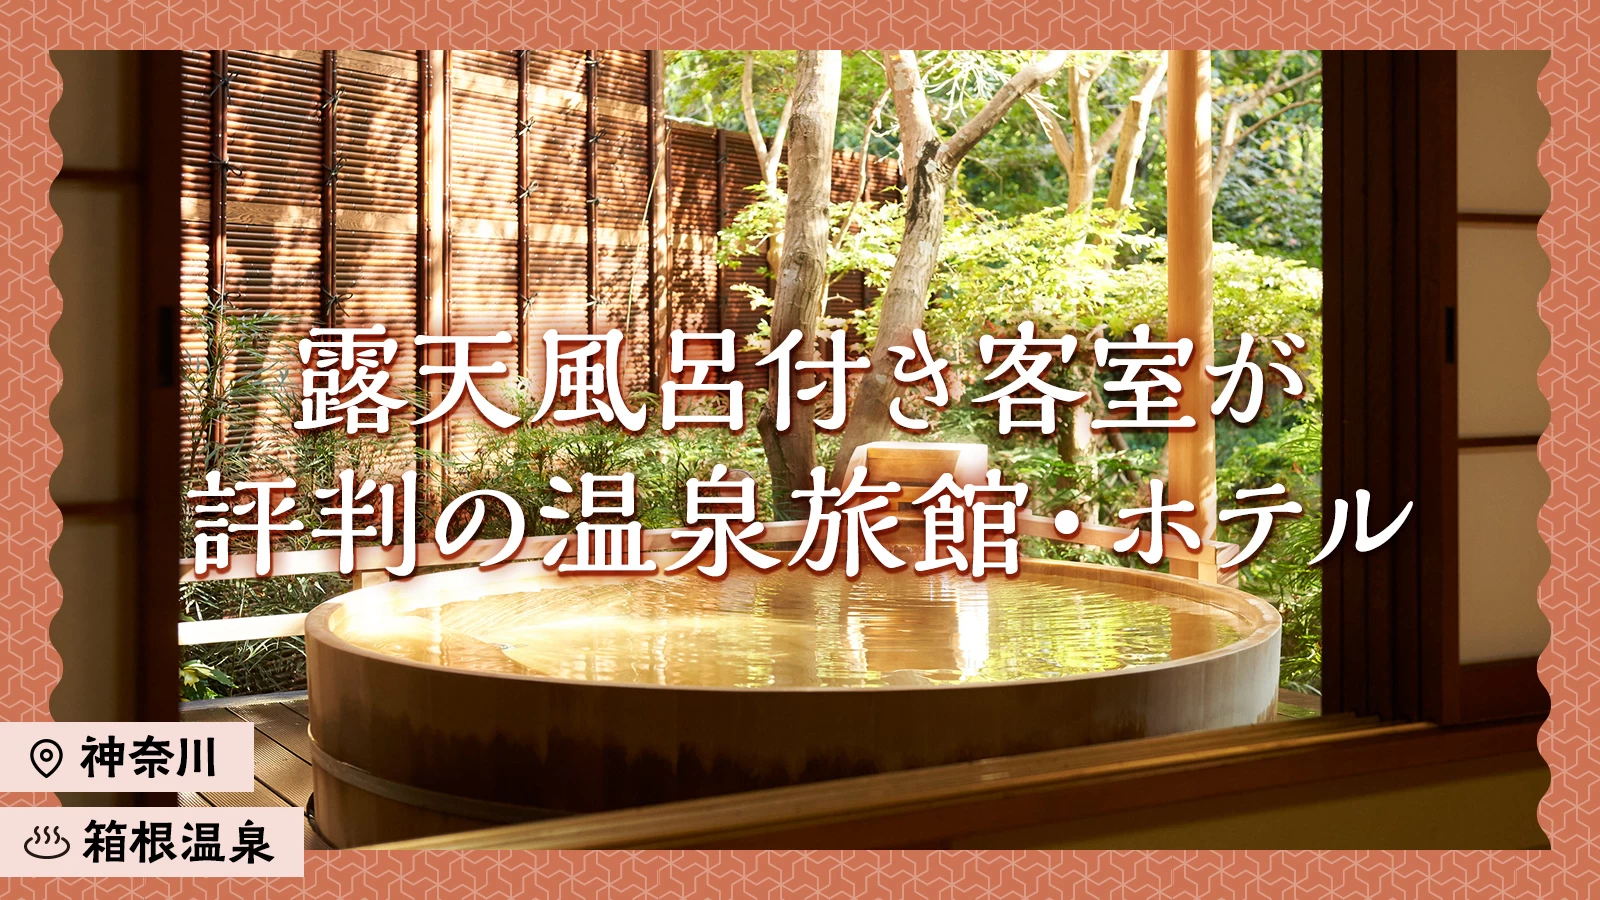 【神奈川・箱根温泉】露天風呂付き客室が評判の温泉旅館・ホテル16選